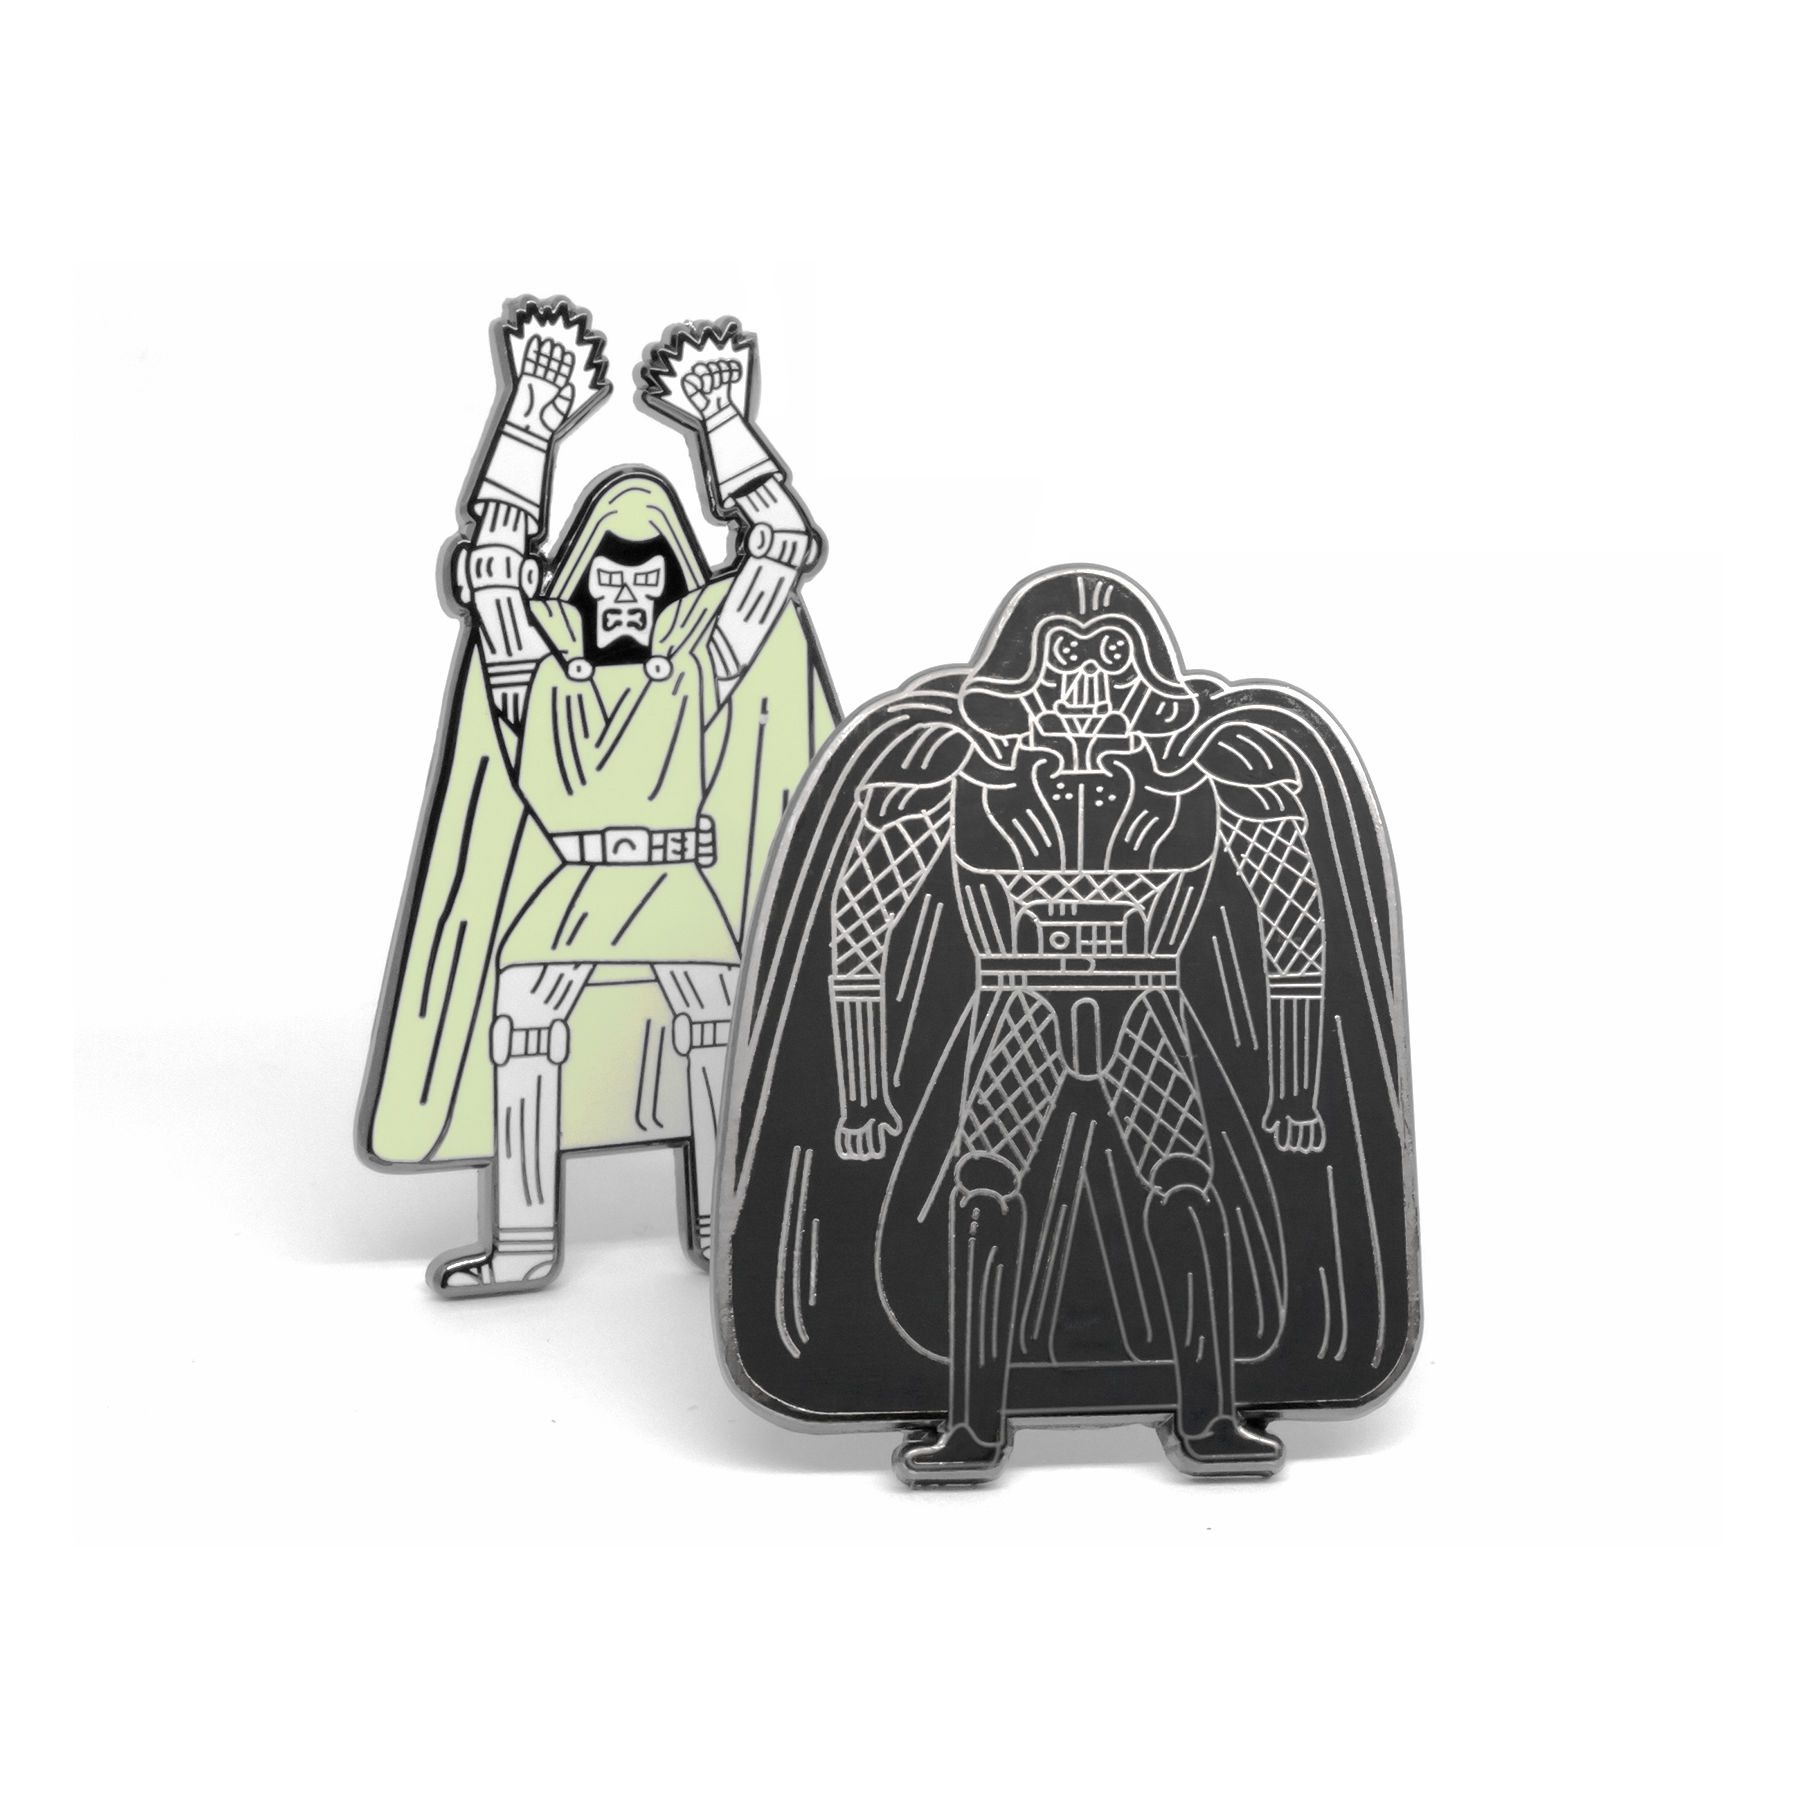 Vader & Doom enamel pin set